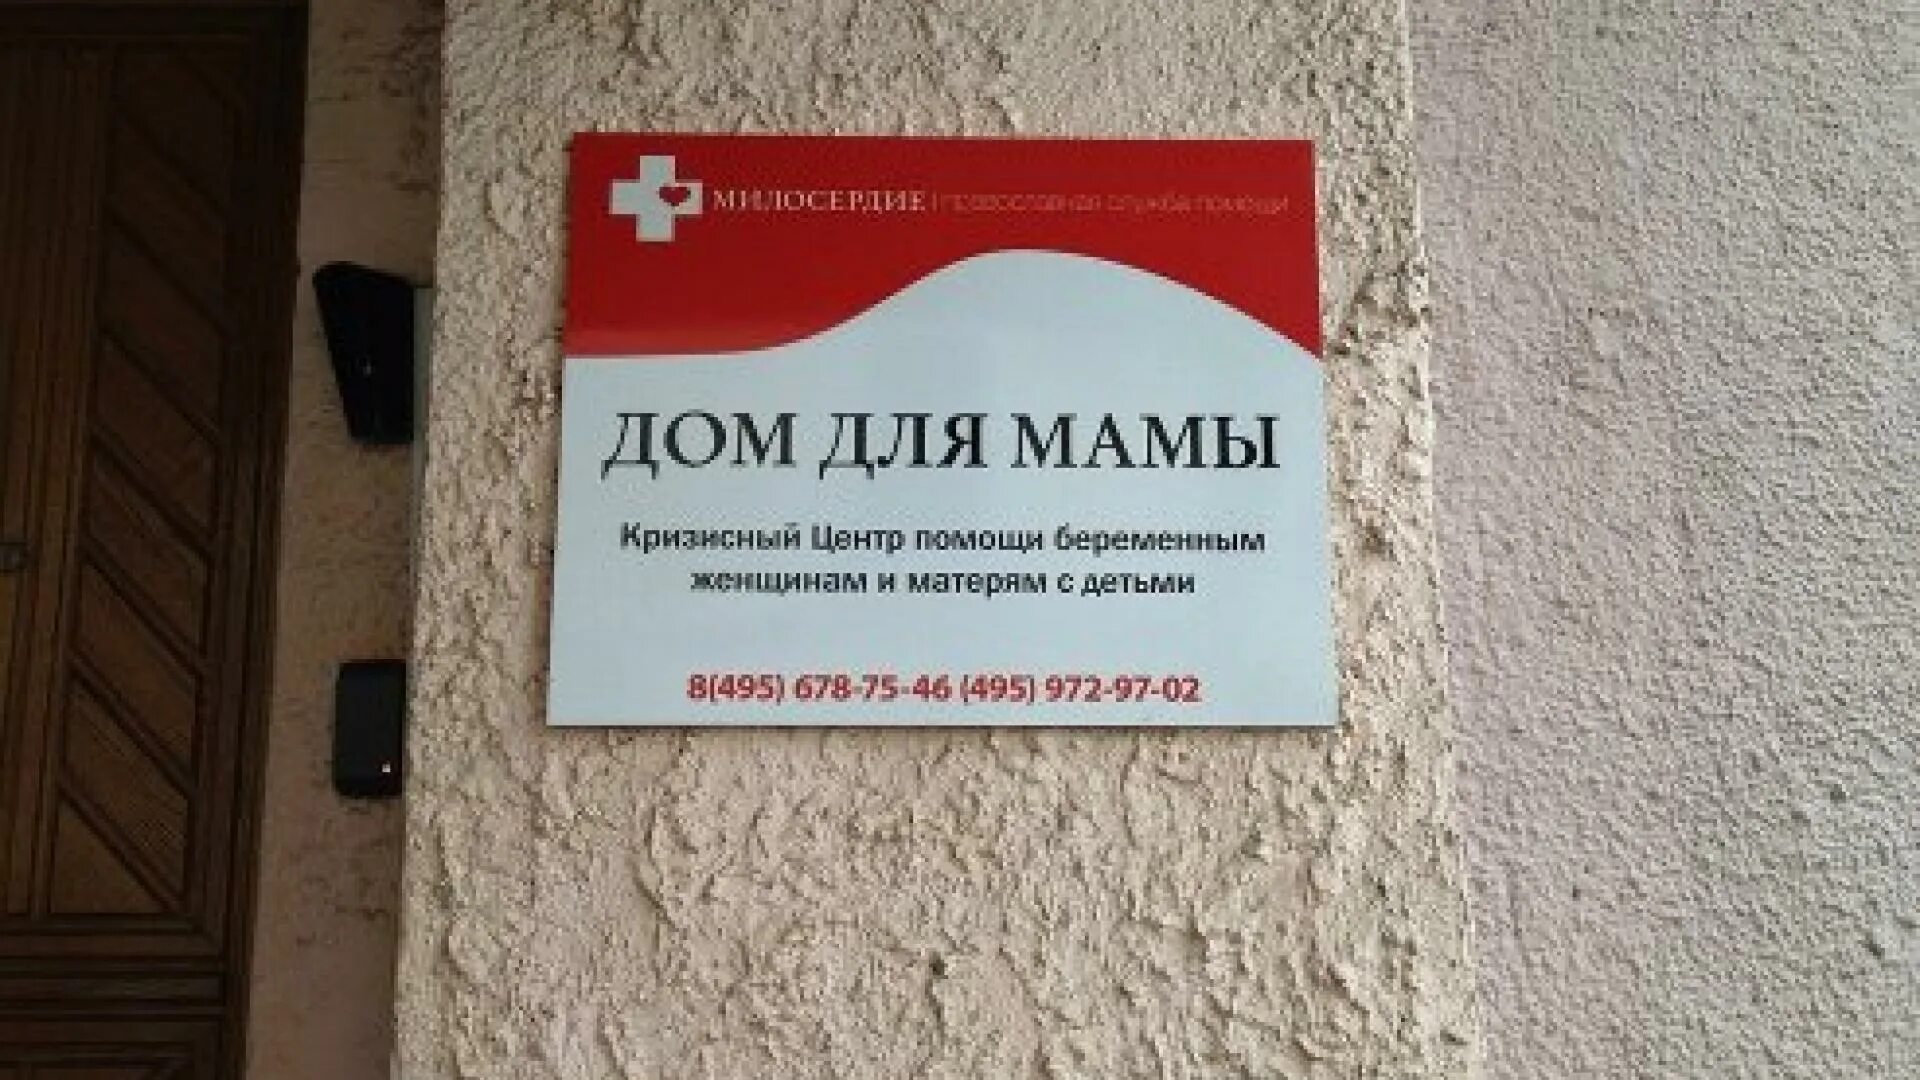 Кризис центр. Кризисный центр. Кризисный центр для женщин Москва. Кризисный центр помощи. Кризисный центр дом для мамы.